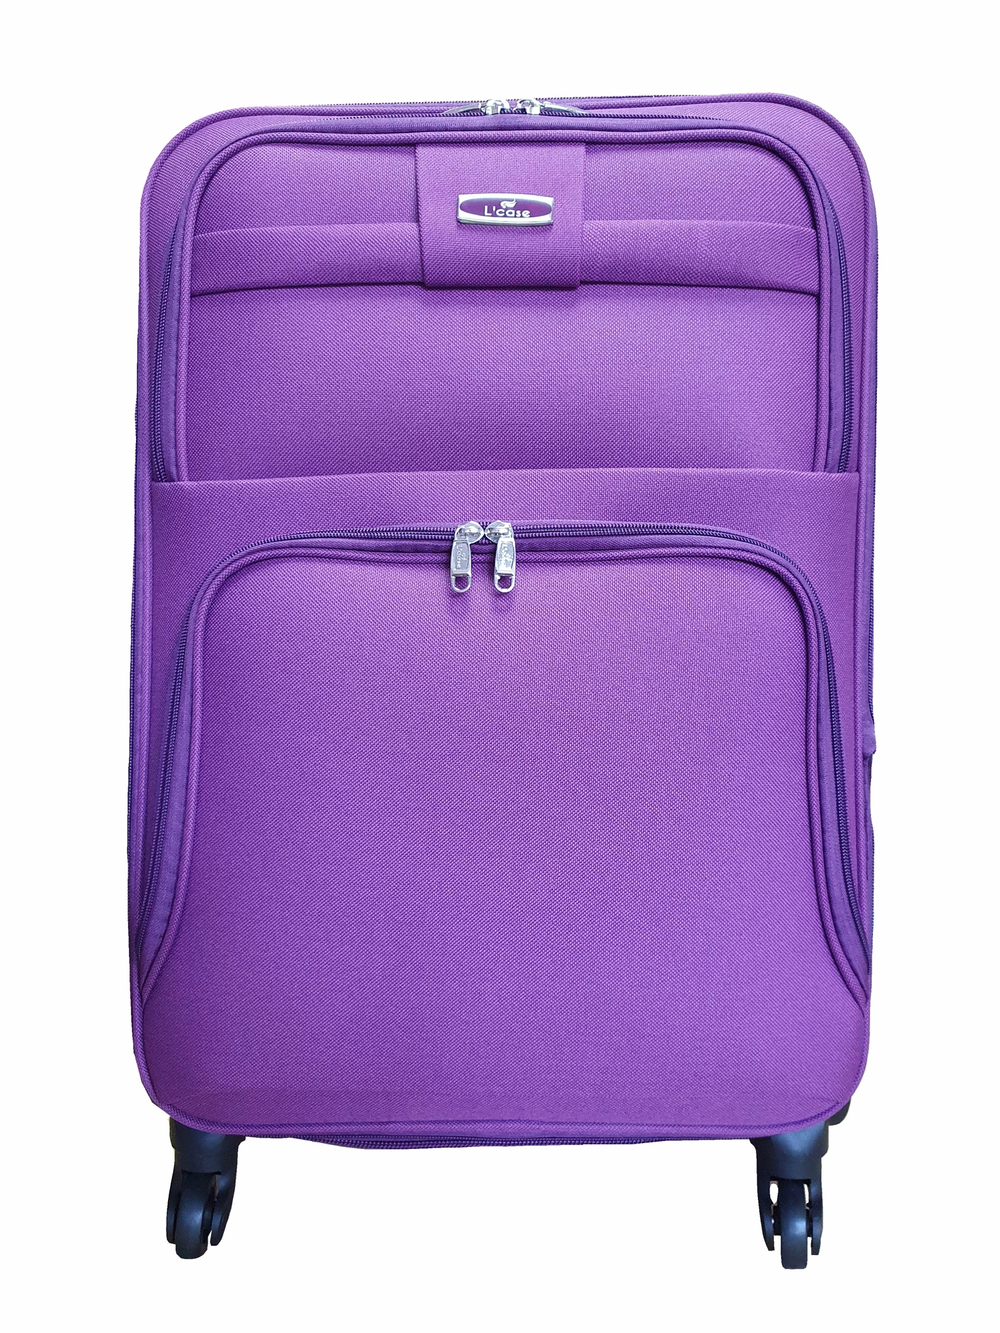 Чемодан на колесах тканевый L’case Barcelona размера XL (82х54х33 (+5) см), объем 138 литров, вес 4.5 кг, Фиолетовый